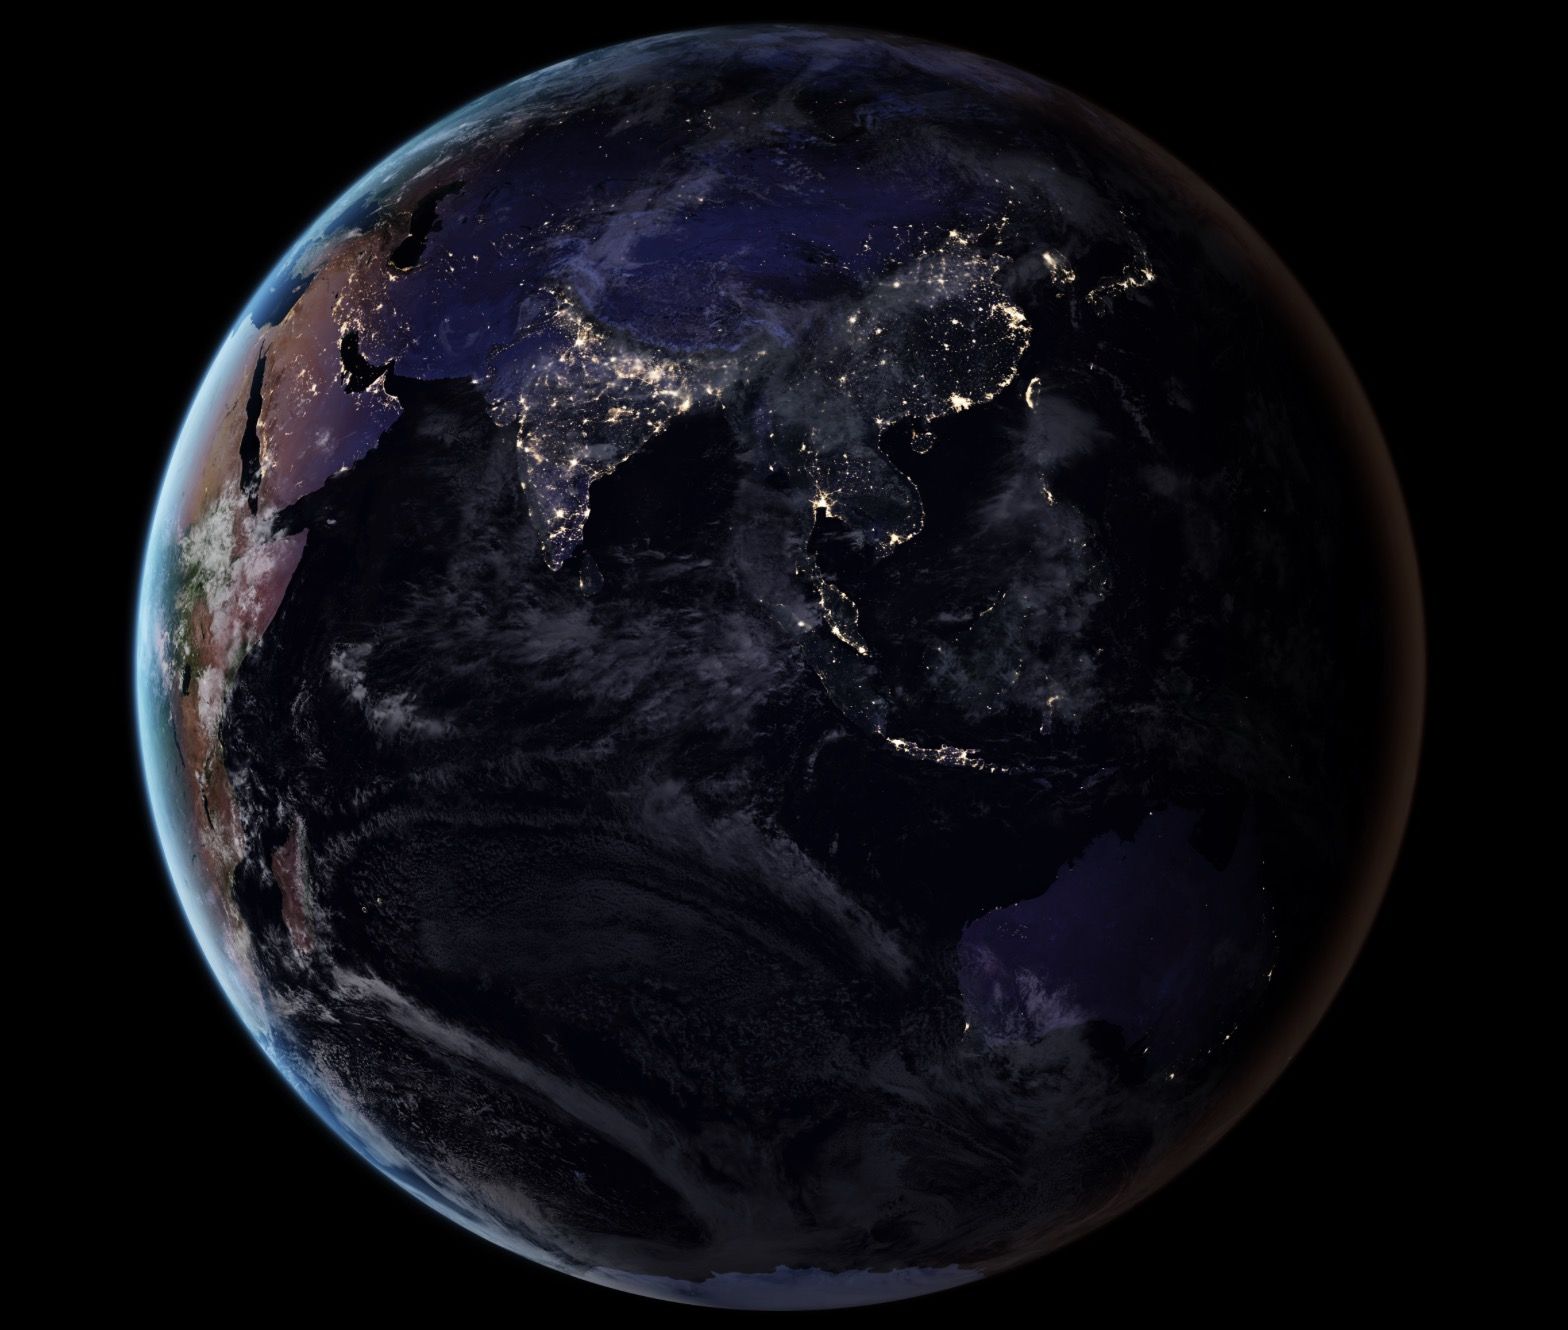 Stunning Earth Night Lights Wallpaper from NASA